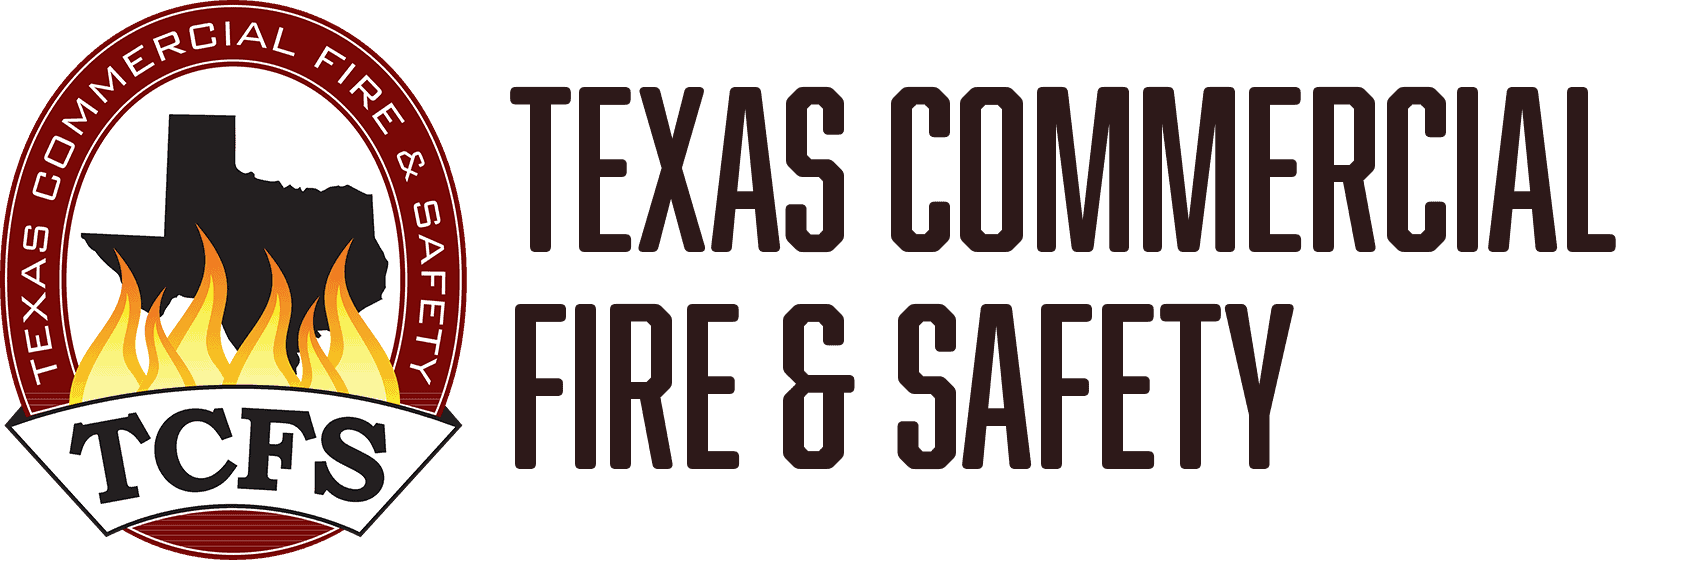 texas fire safety logo 2